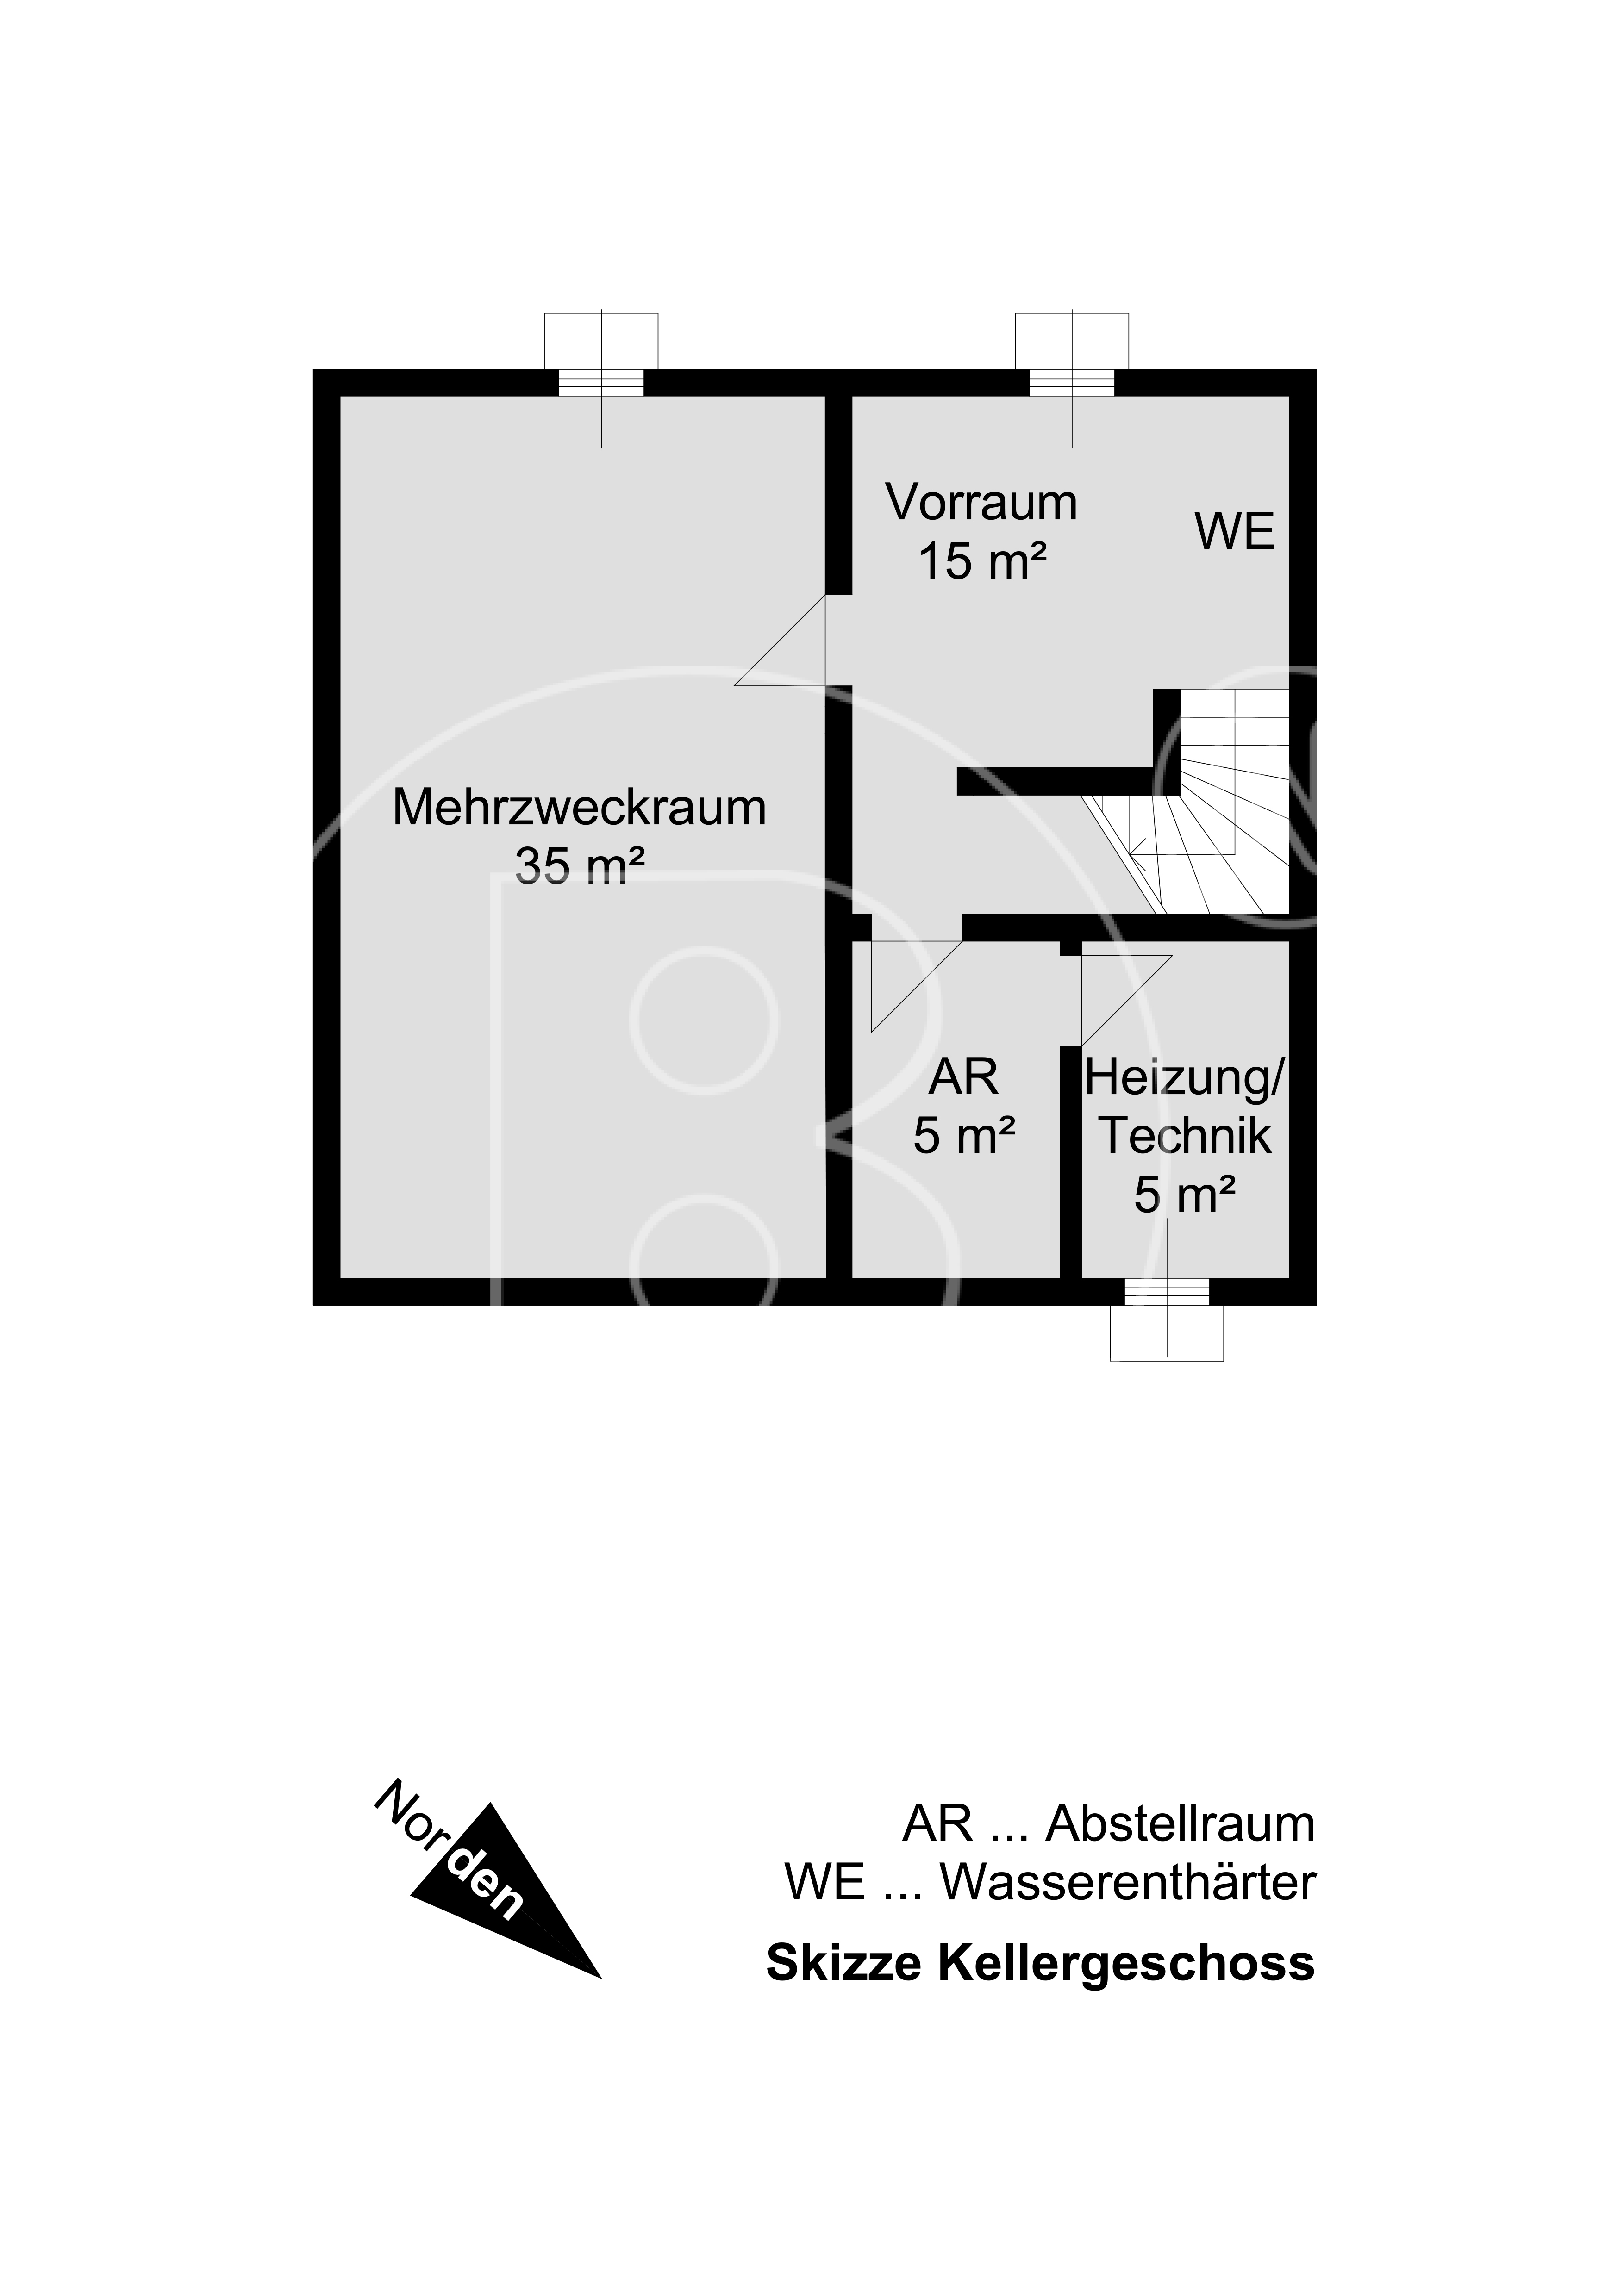 GRUNDRISS - Modernes Einfamilienhaus in hervorragender Wohnumgebung!